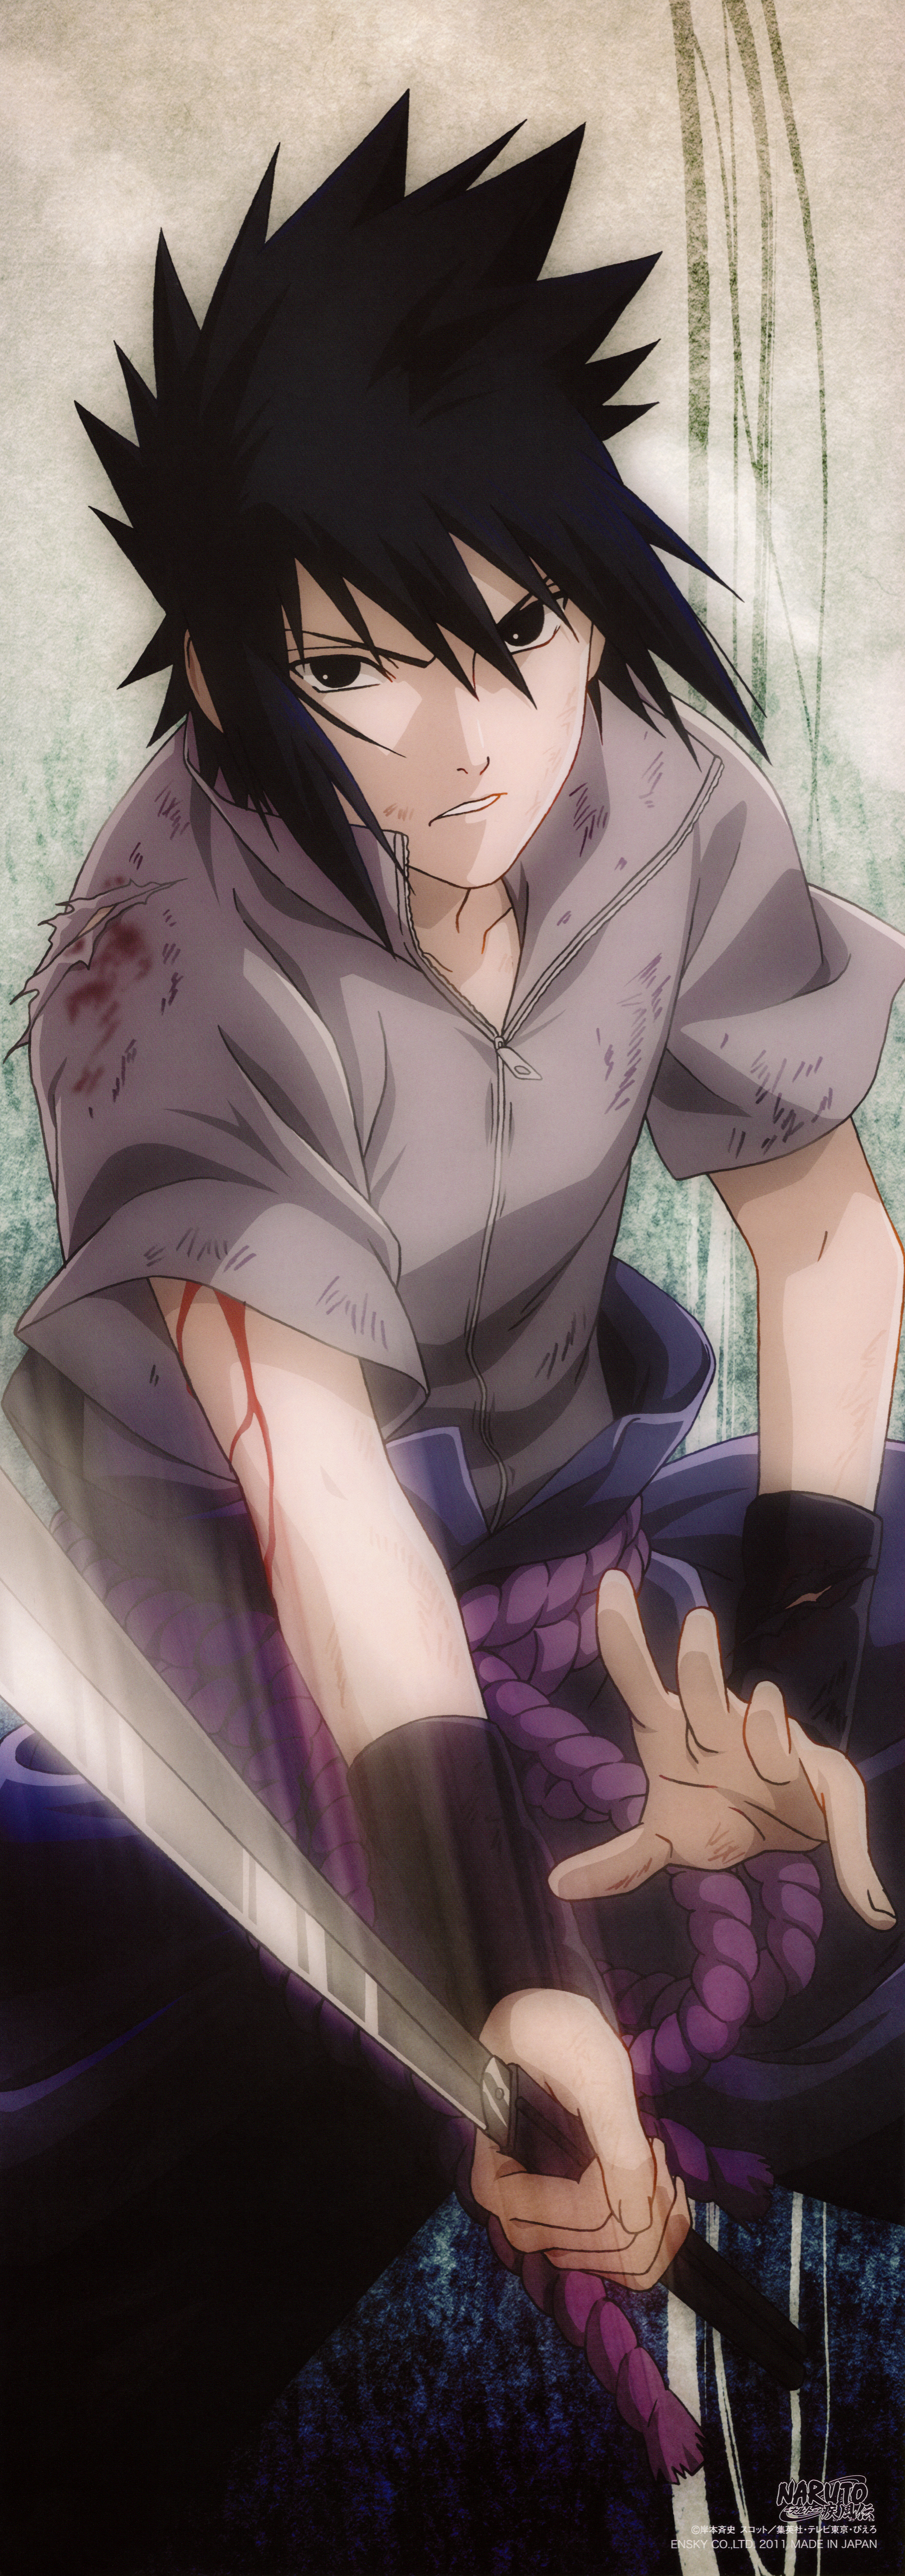 sasuke wallpaper,karikatur,anime,cg kunstwerk,schwarzes haar,erfundener charakter